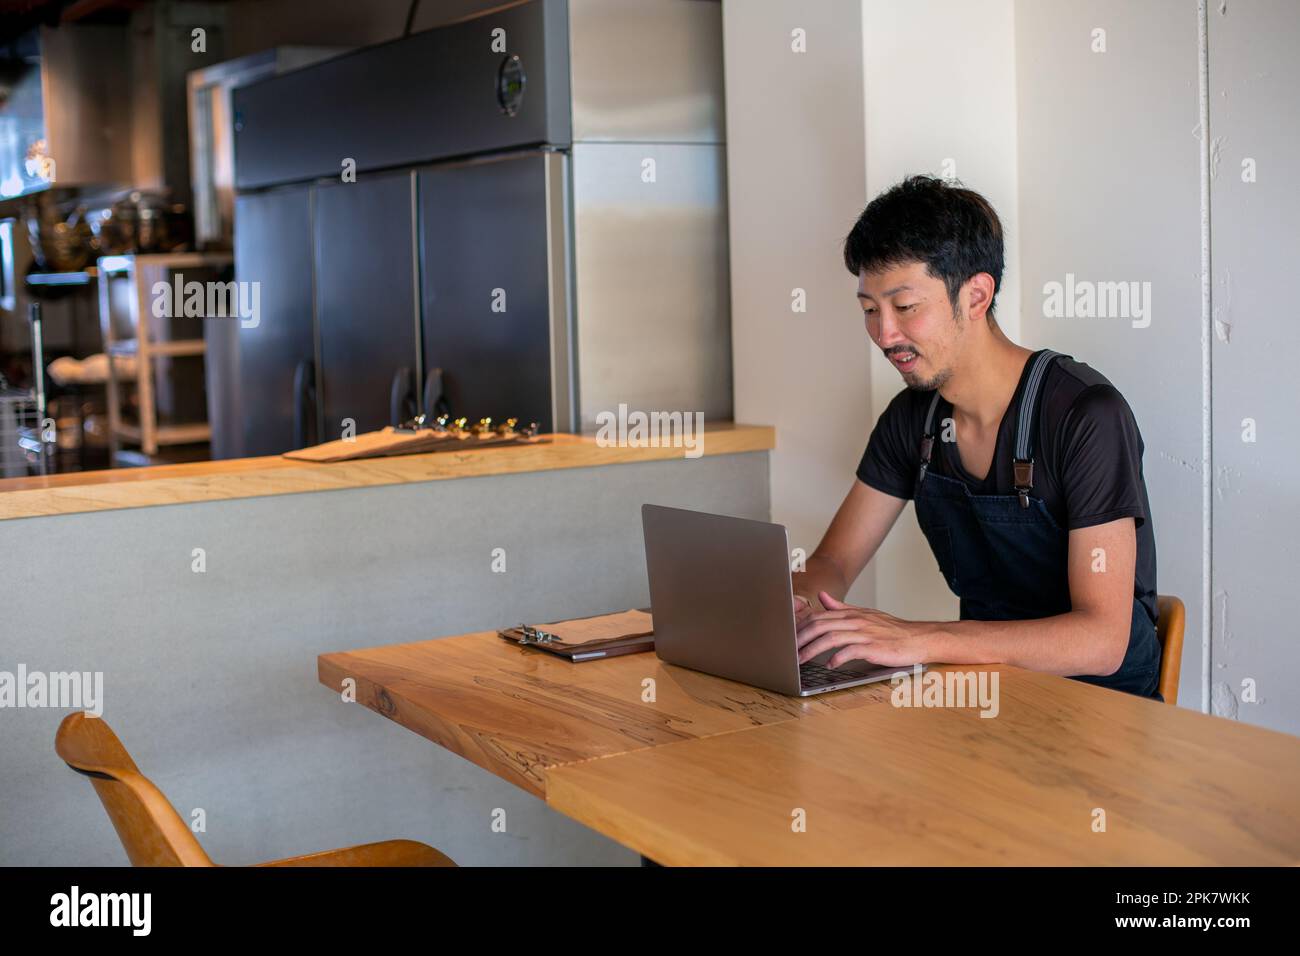 Un homme assis à une table à l'aide d'un ordinateur portable, propriétaire et directeur d'un petit restaurant. Banque D'Images